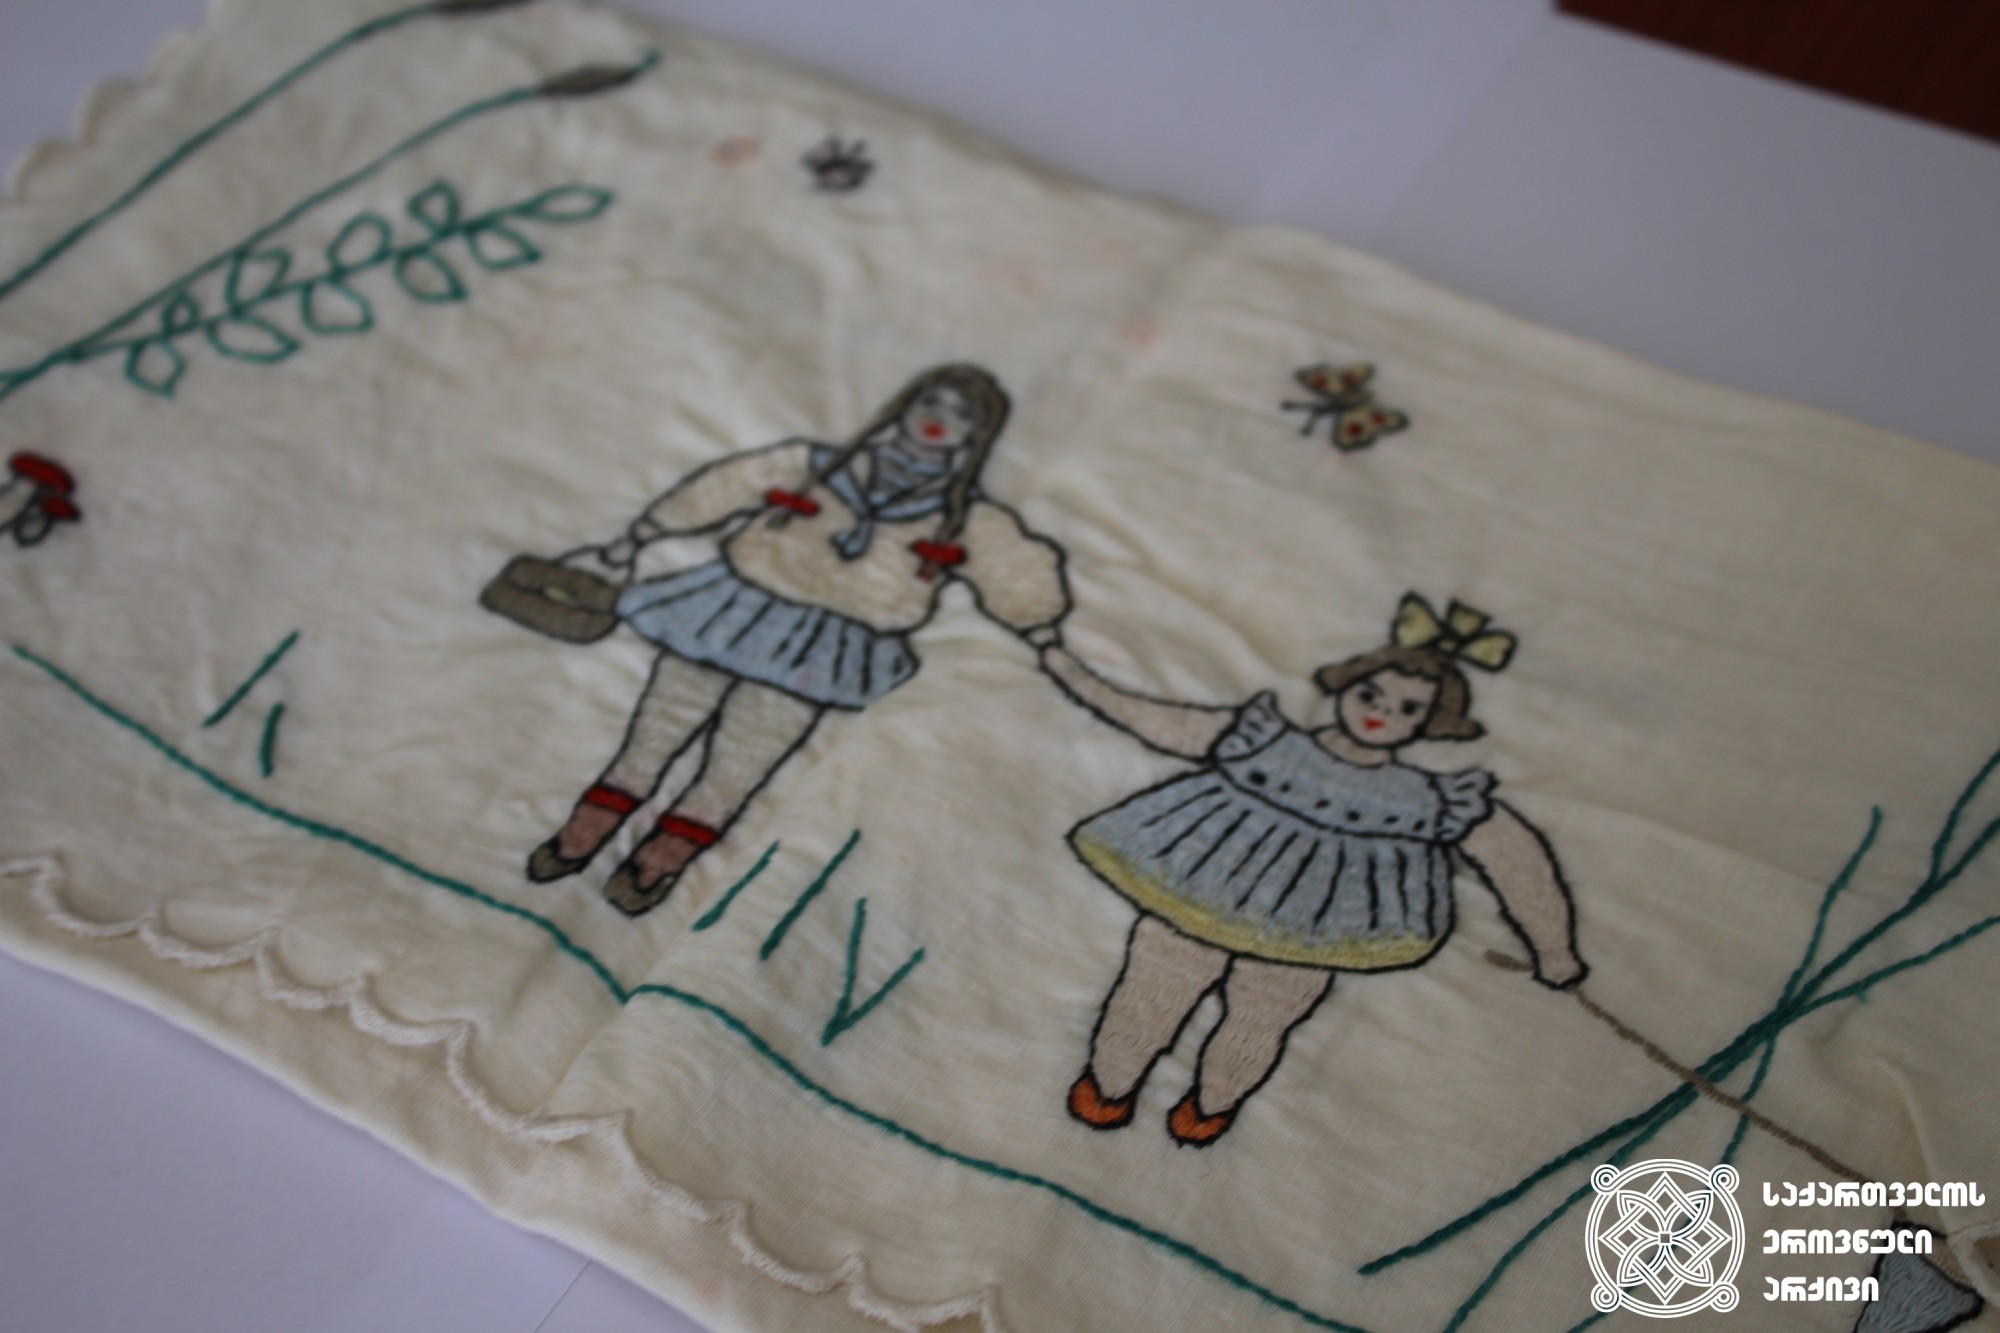 მარიამ ცაბაძის (გიორგი ცაბაძის მეუღლე) მიერ გადასახლებიდან შვილებისთვის  გამოგზავნილი ნაქარგობა. <br>
The embroidery sent by Mariam Tsabadze (Giorgi Tsabadze’s wife) to her children from exile.